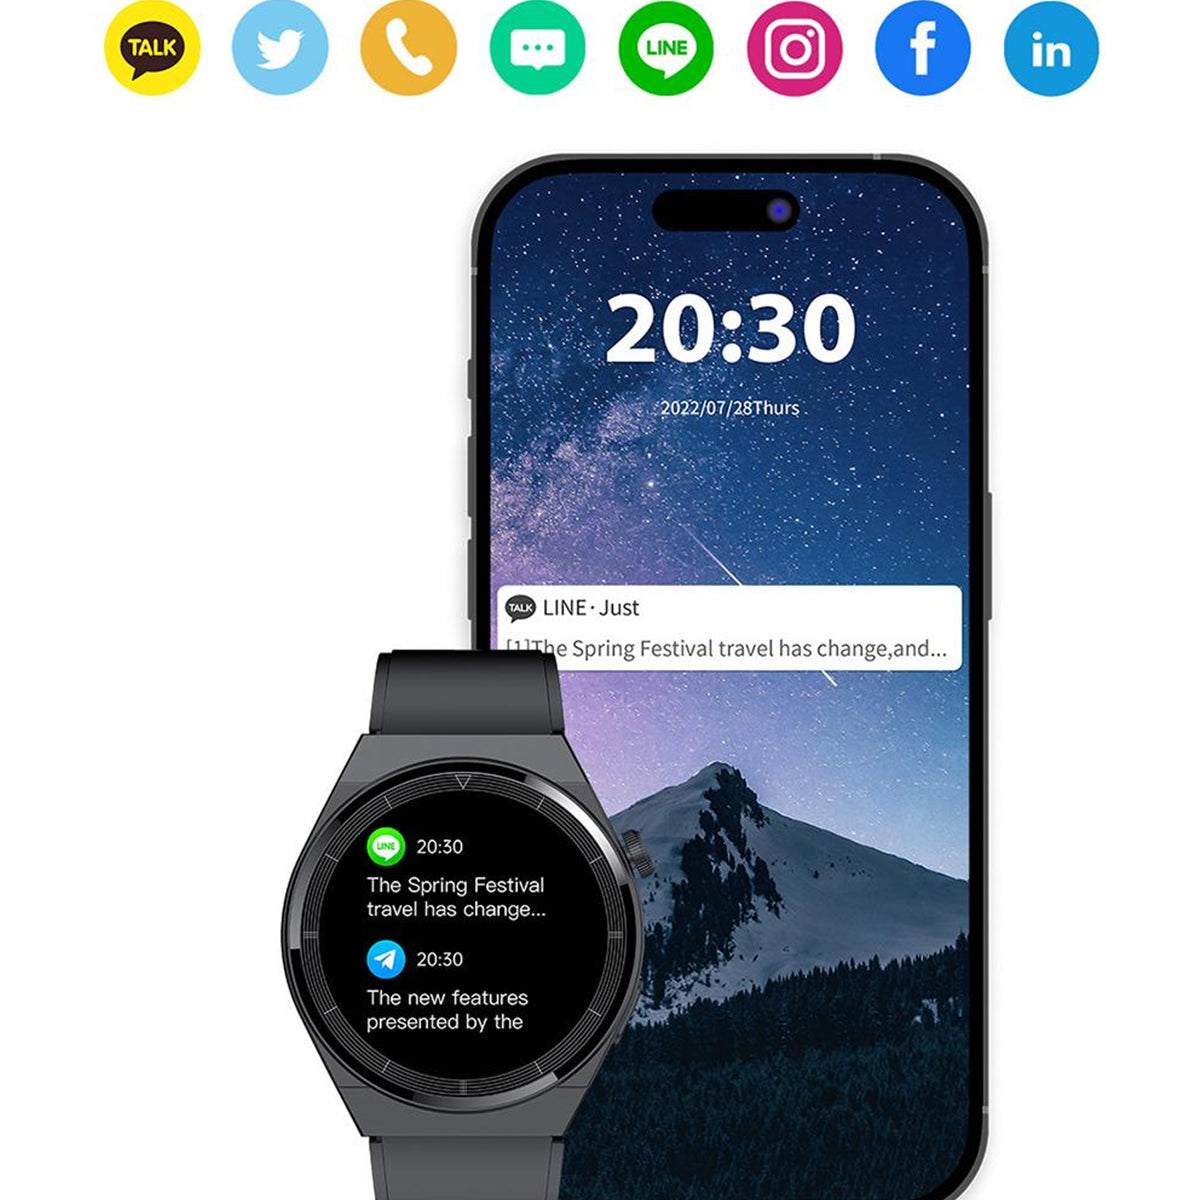 Fralugio Smart Watch Reloj Inteligente T88 Full Touch Ips Hd